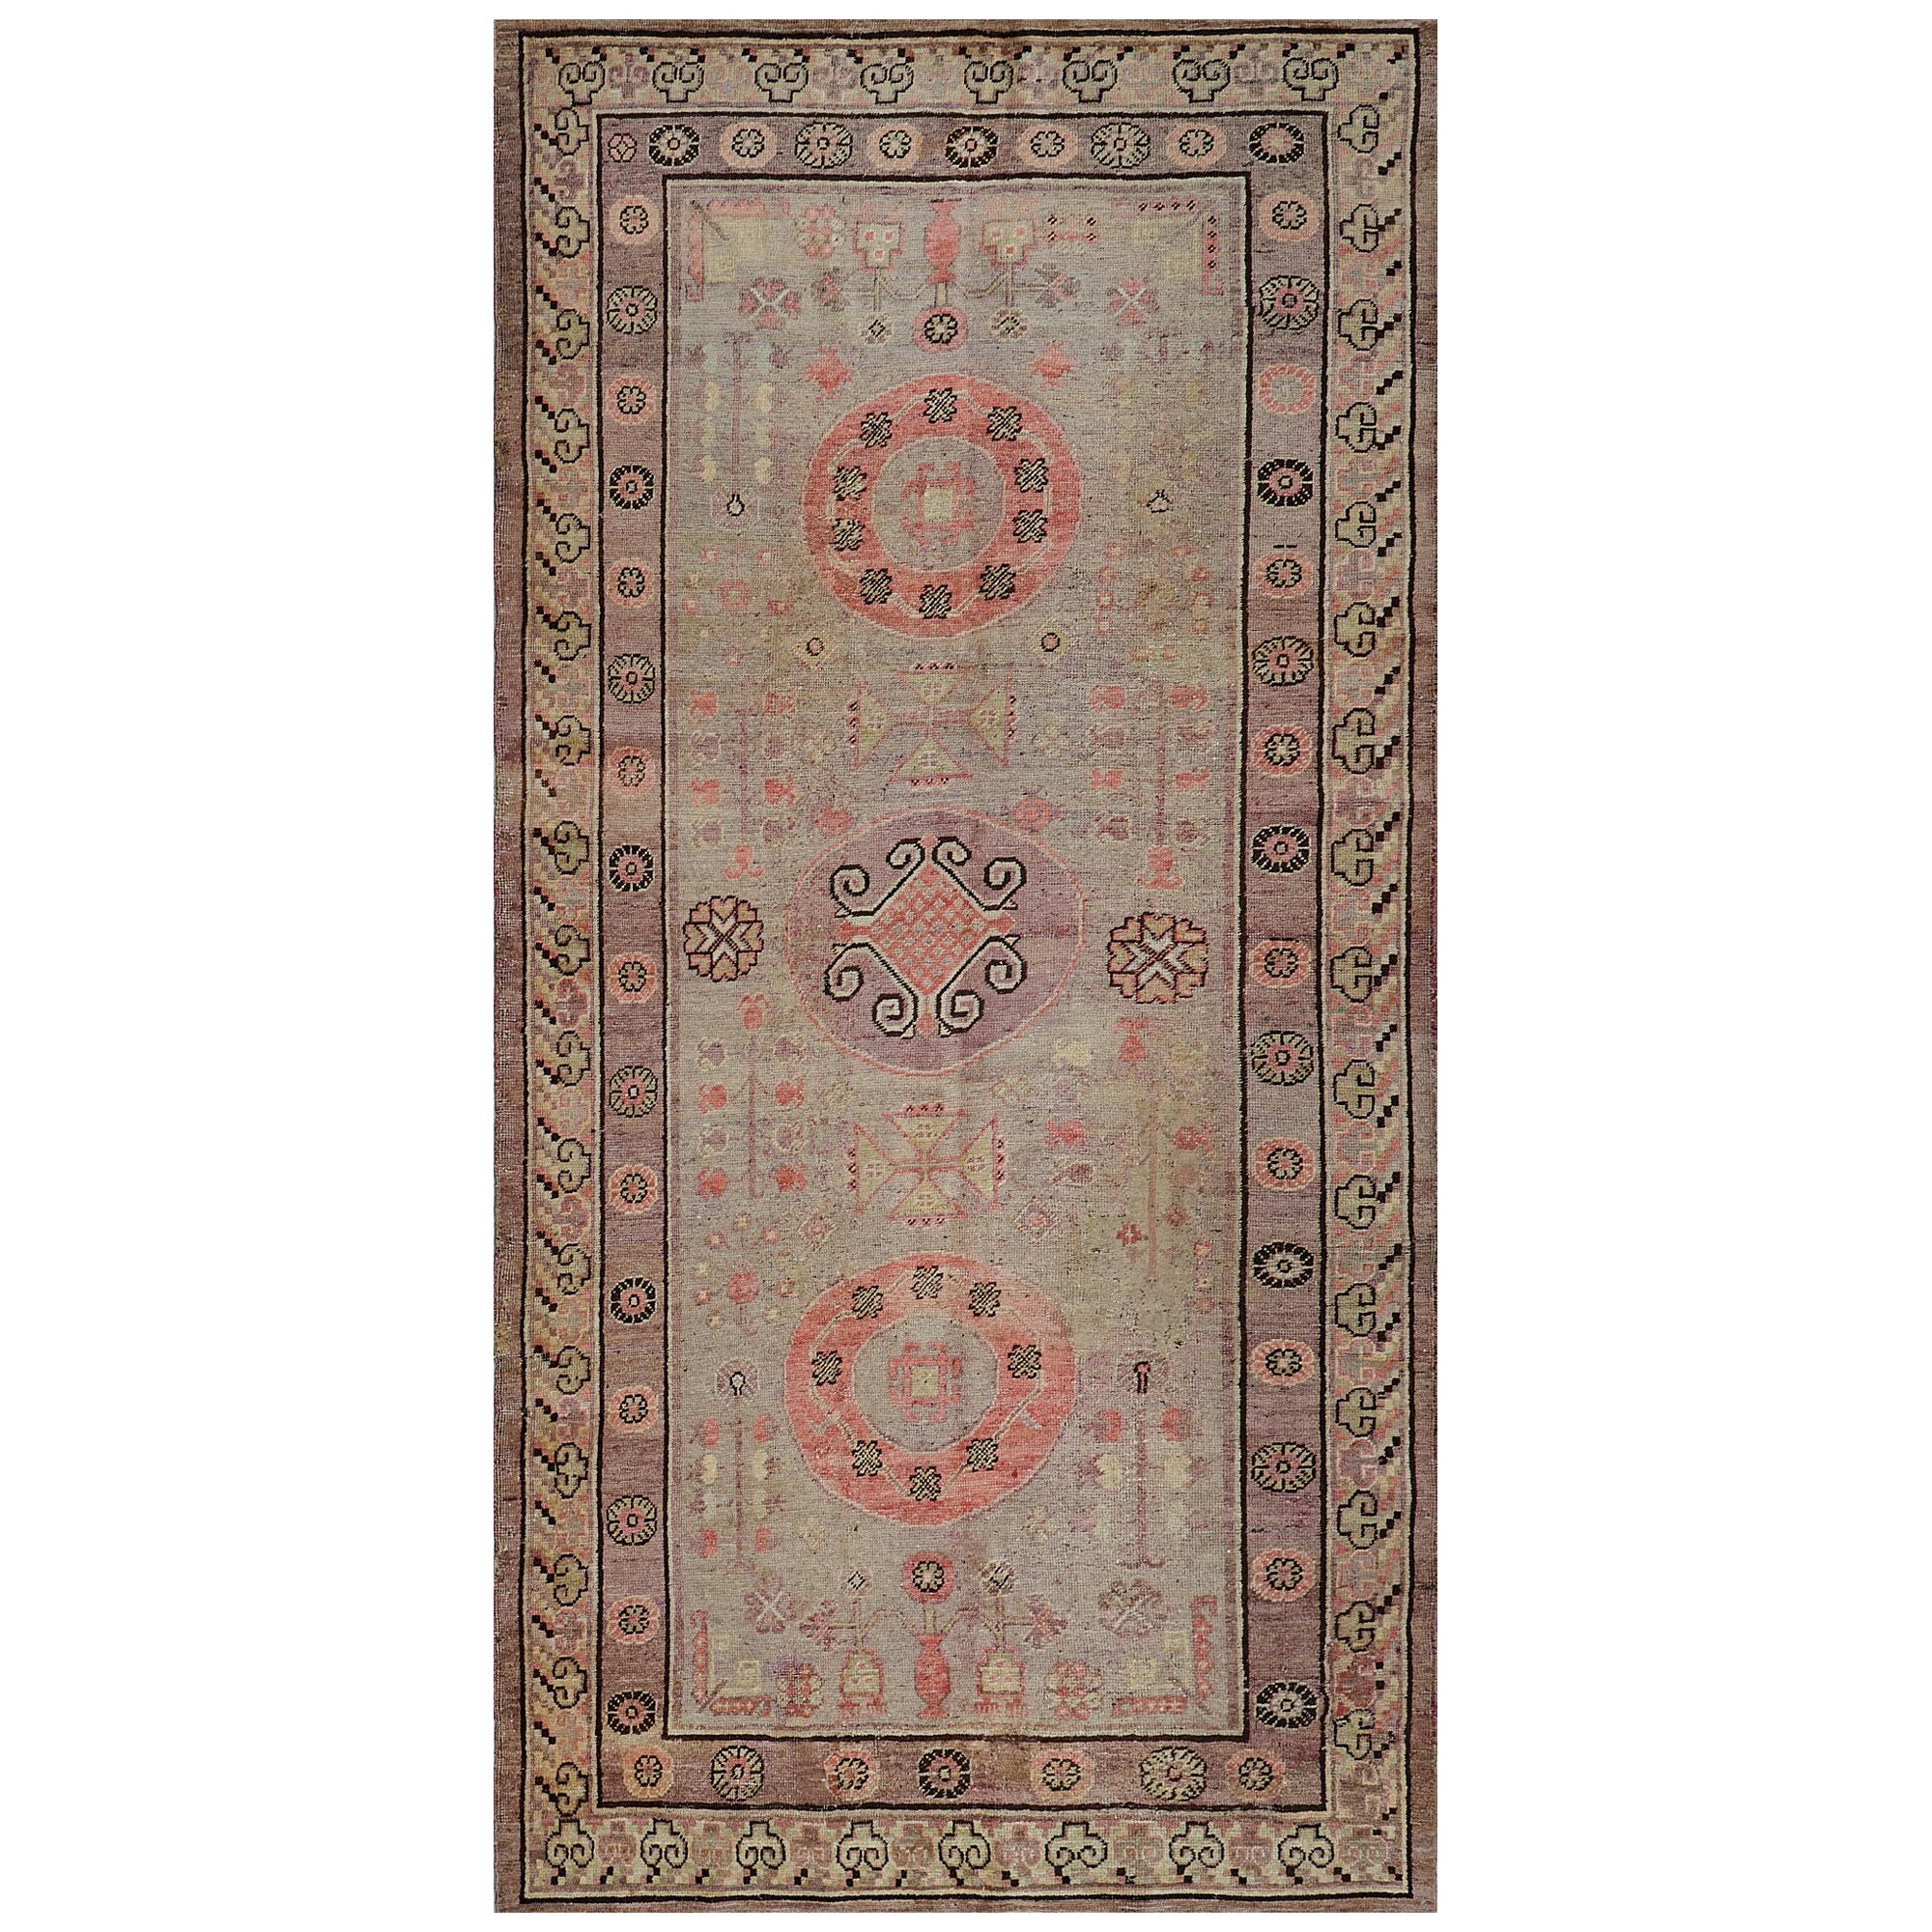 Handgewebter Khotan-Teppich aus antiker Wolle